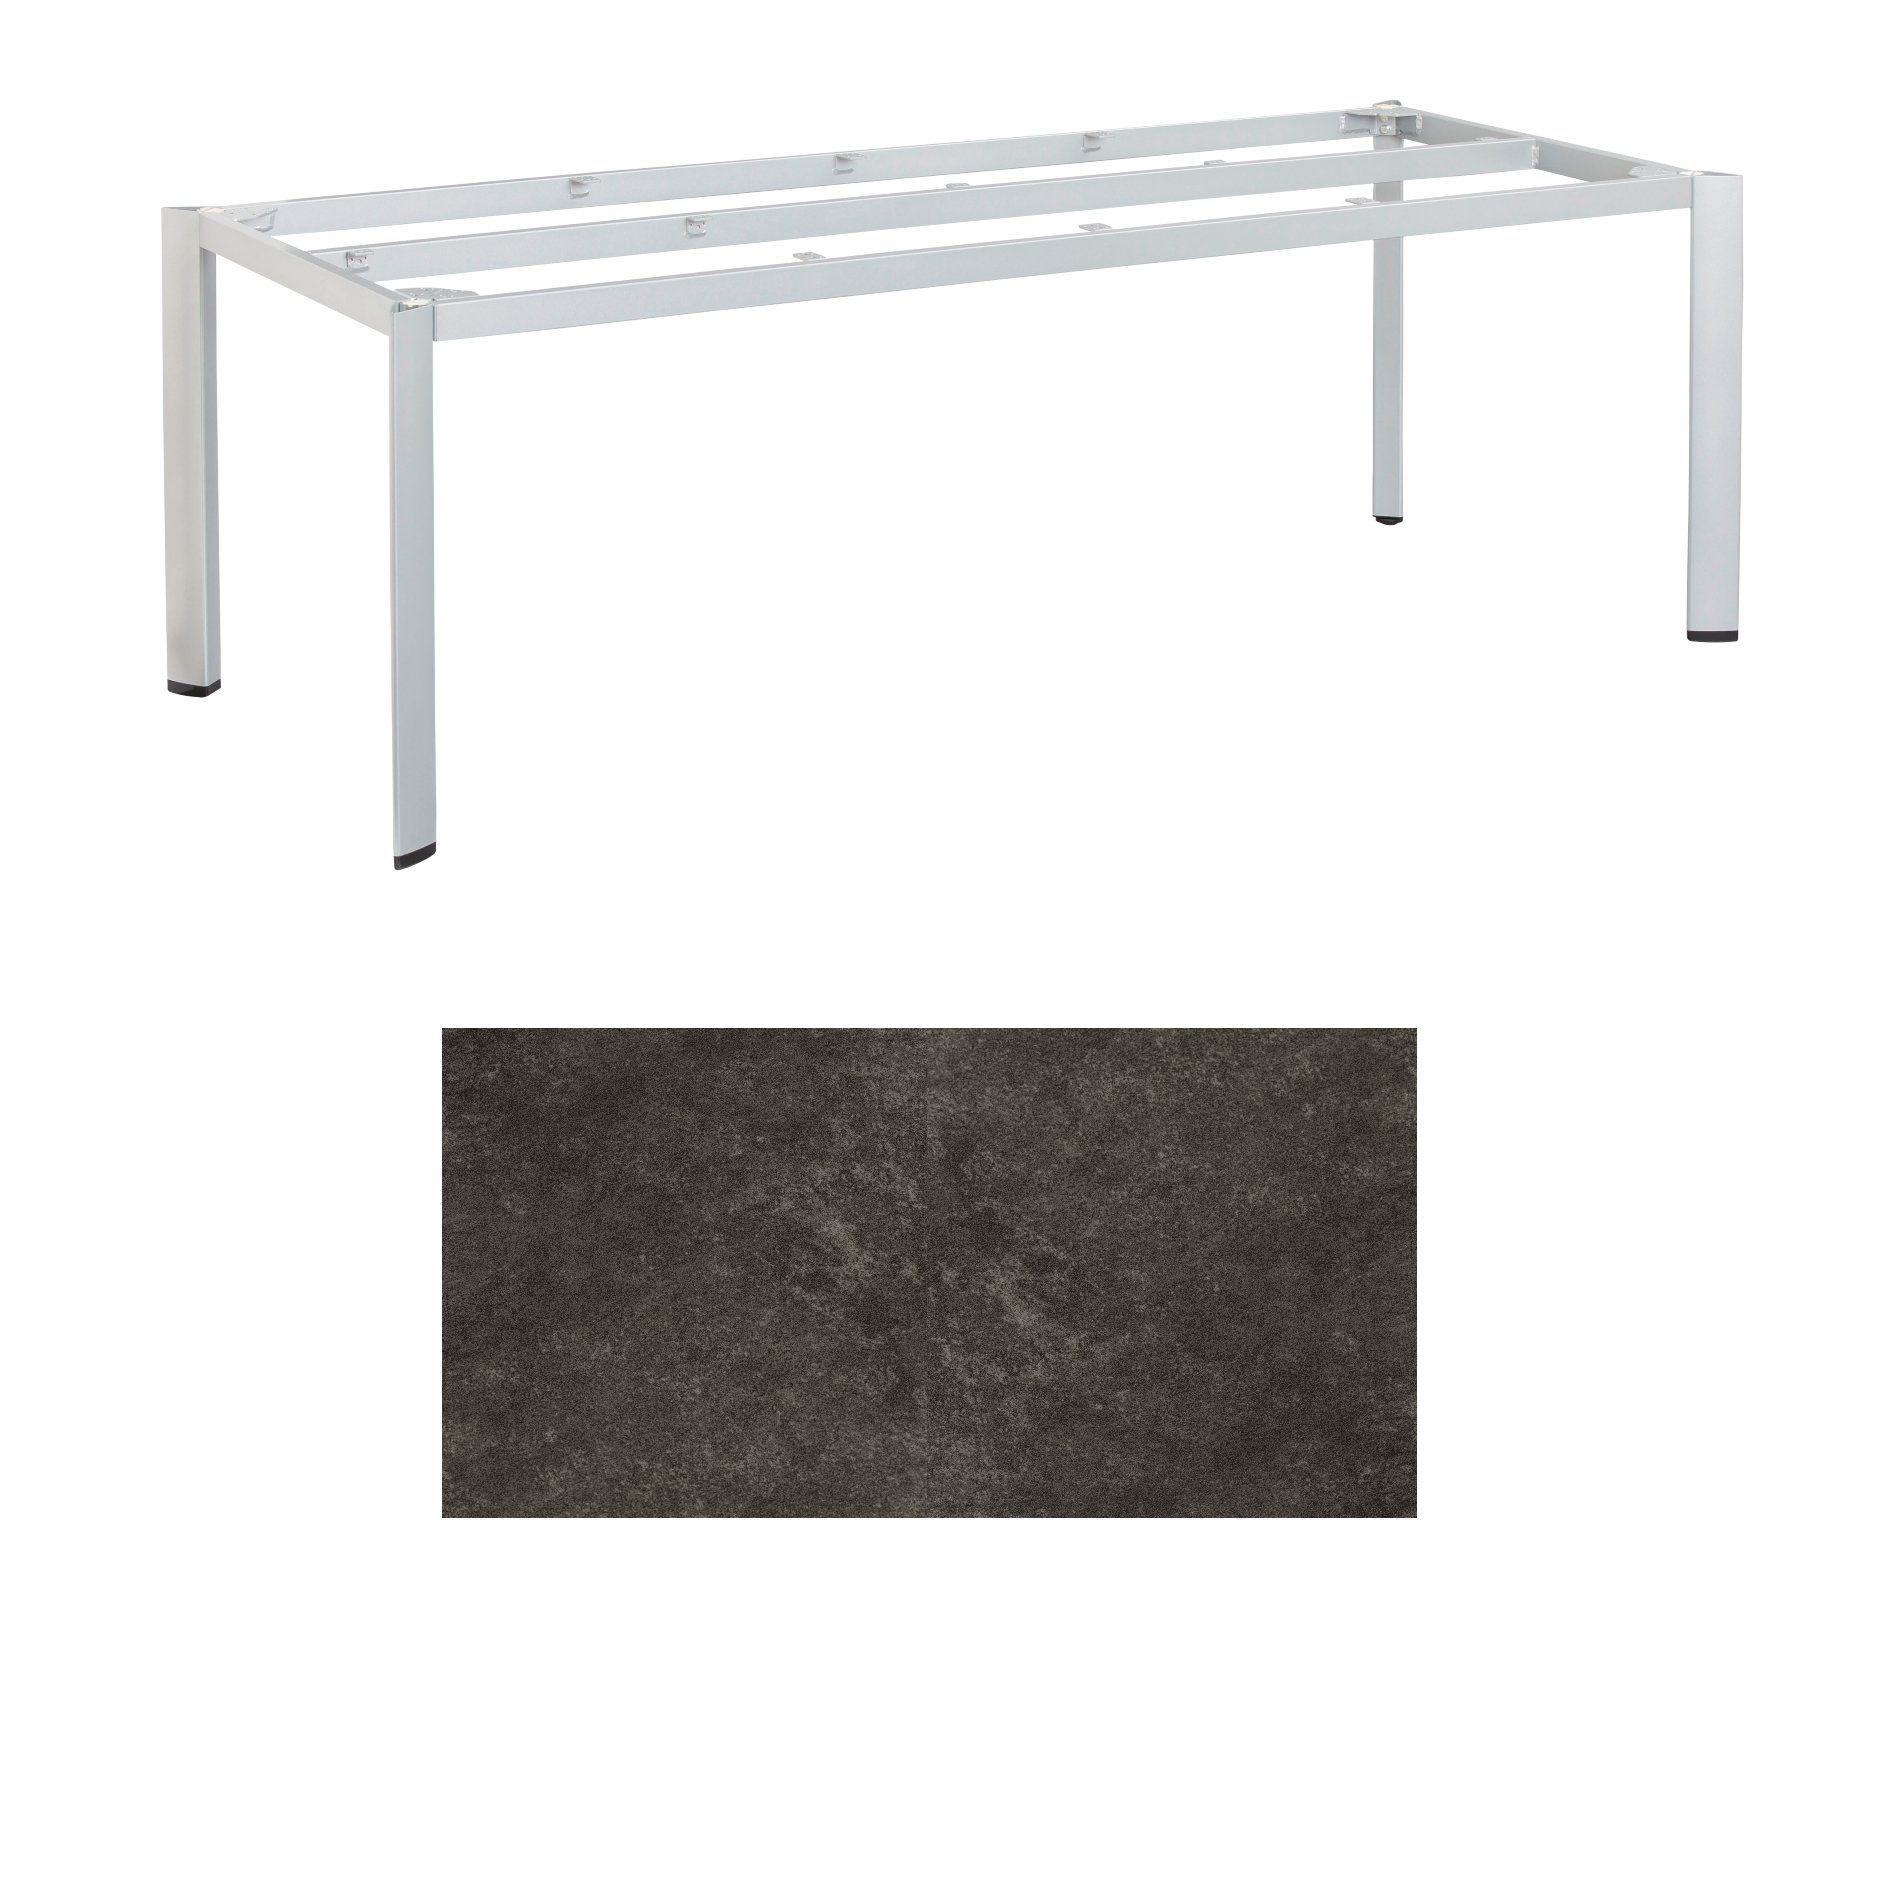 Kettler "Edge" Gartentisch, Tischgestell 220x95cm, Aluminium silber, mit Tischplatte Keramik anthrazit